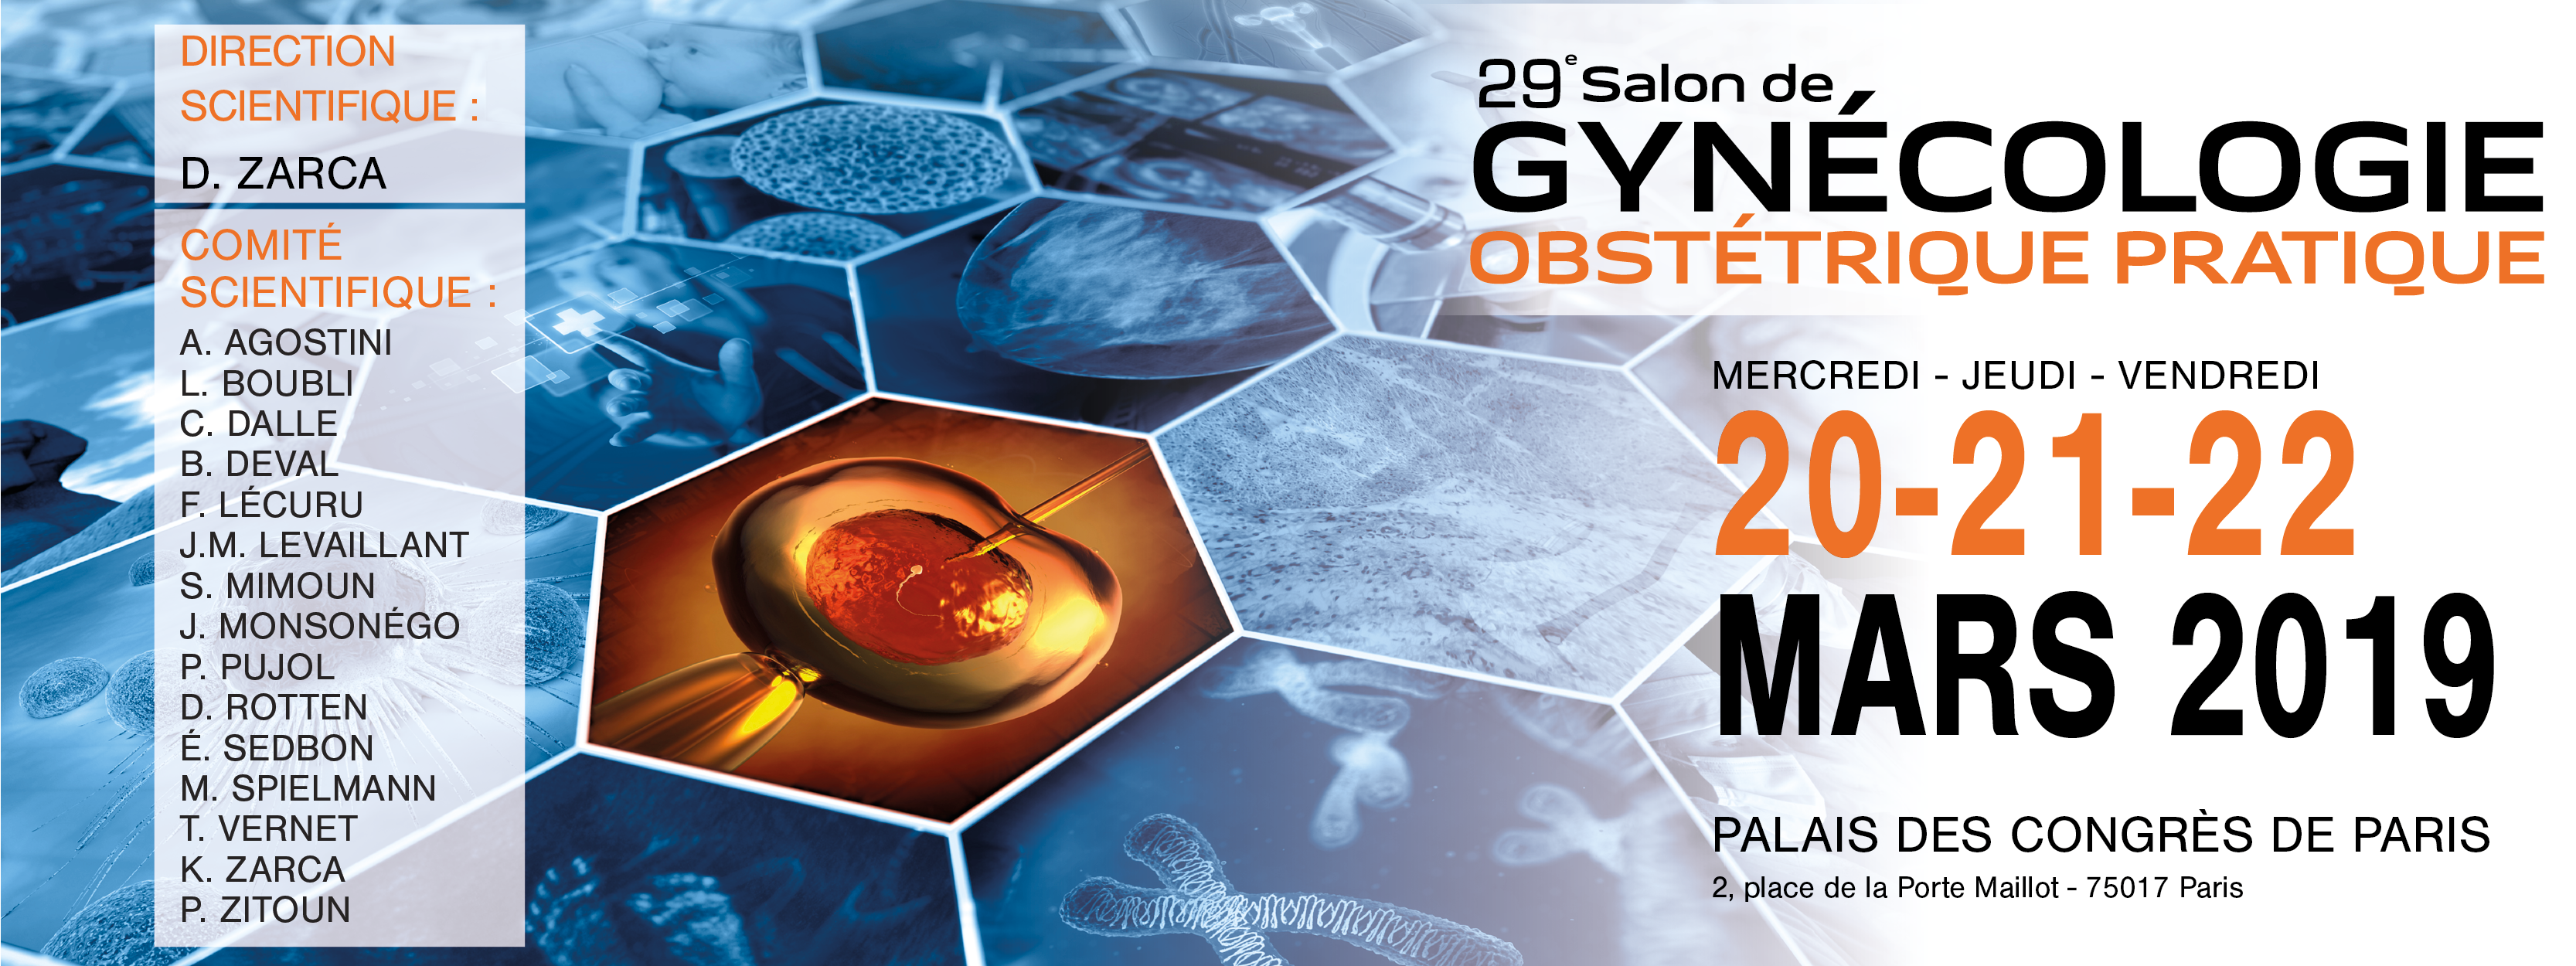 29e Salon de gynécologie obstétrique 2019